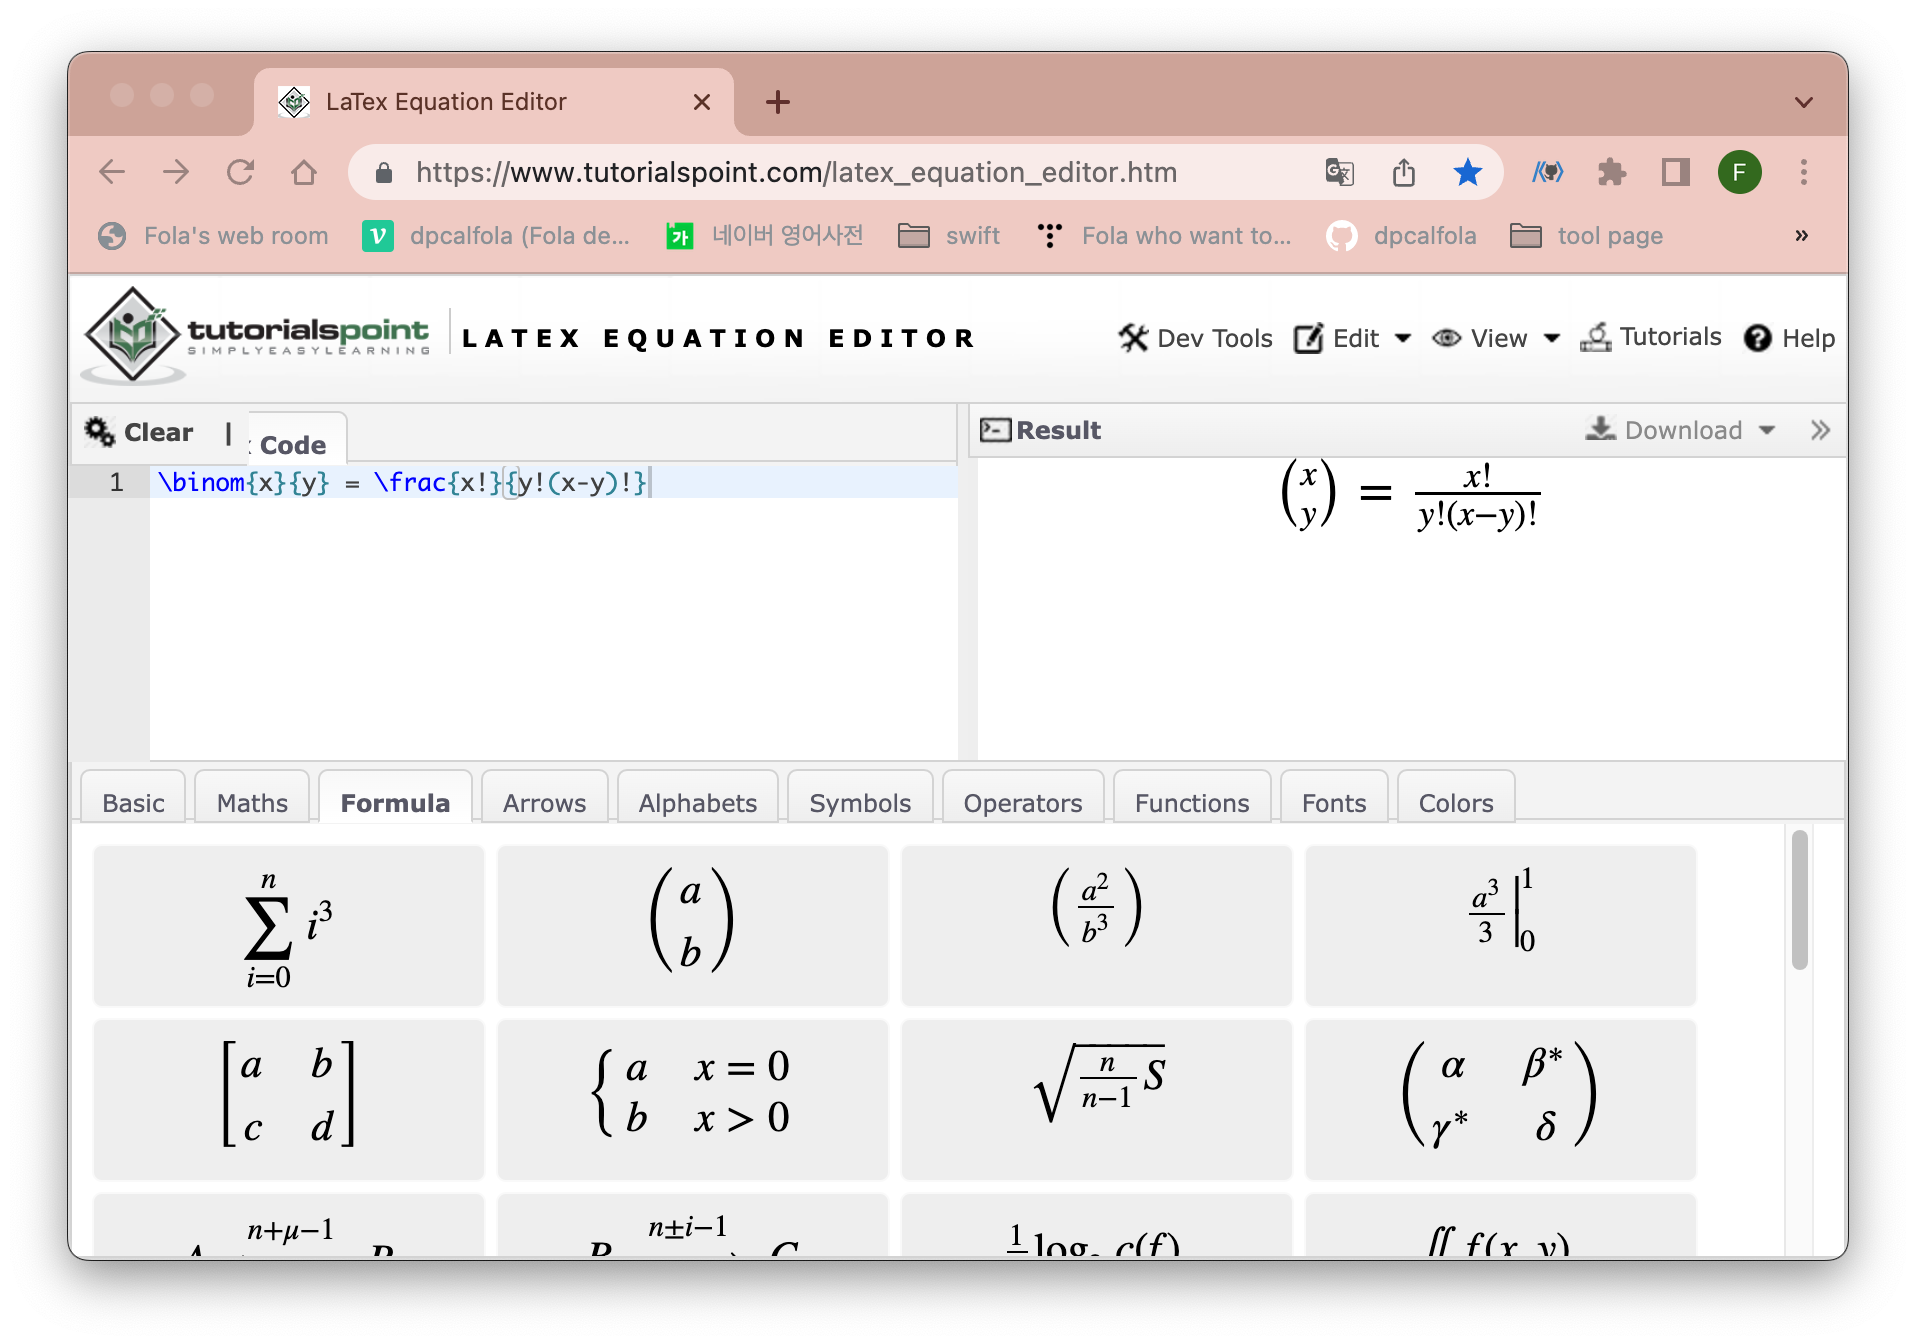 (캡쳐) tutorialspoint - LaTeX Equation Editor 사이트 화면